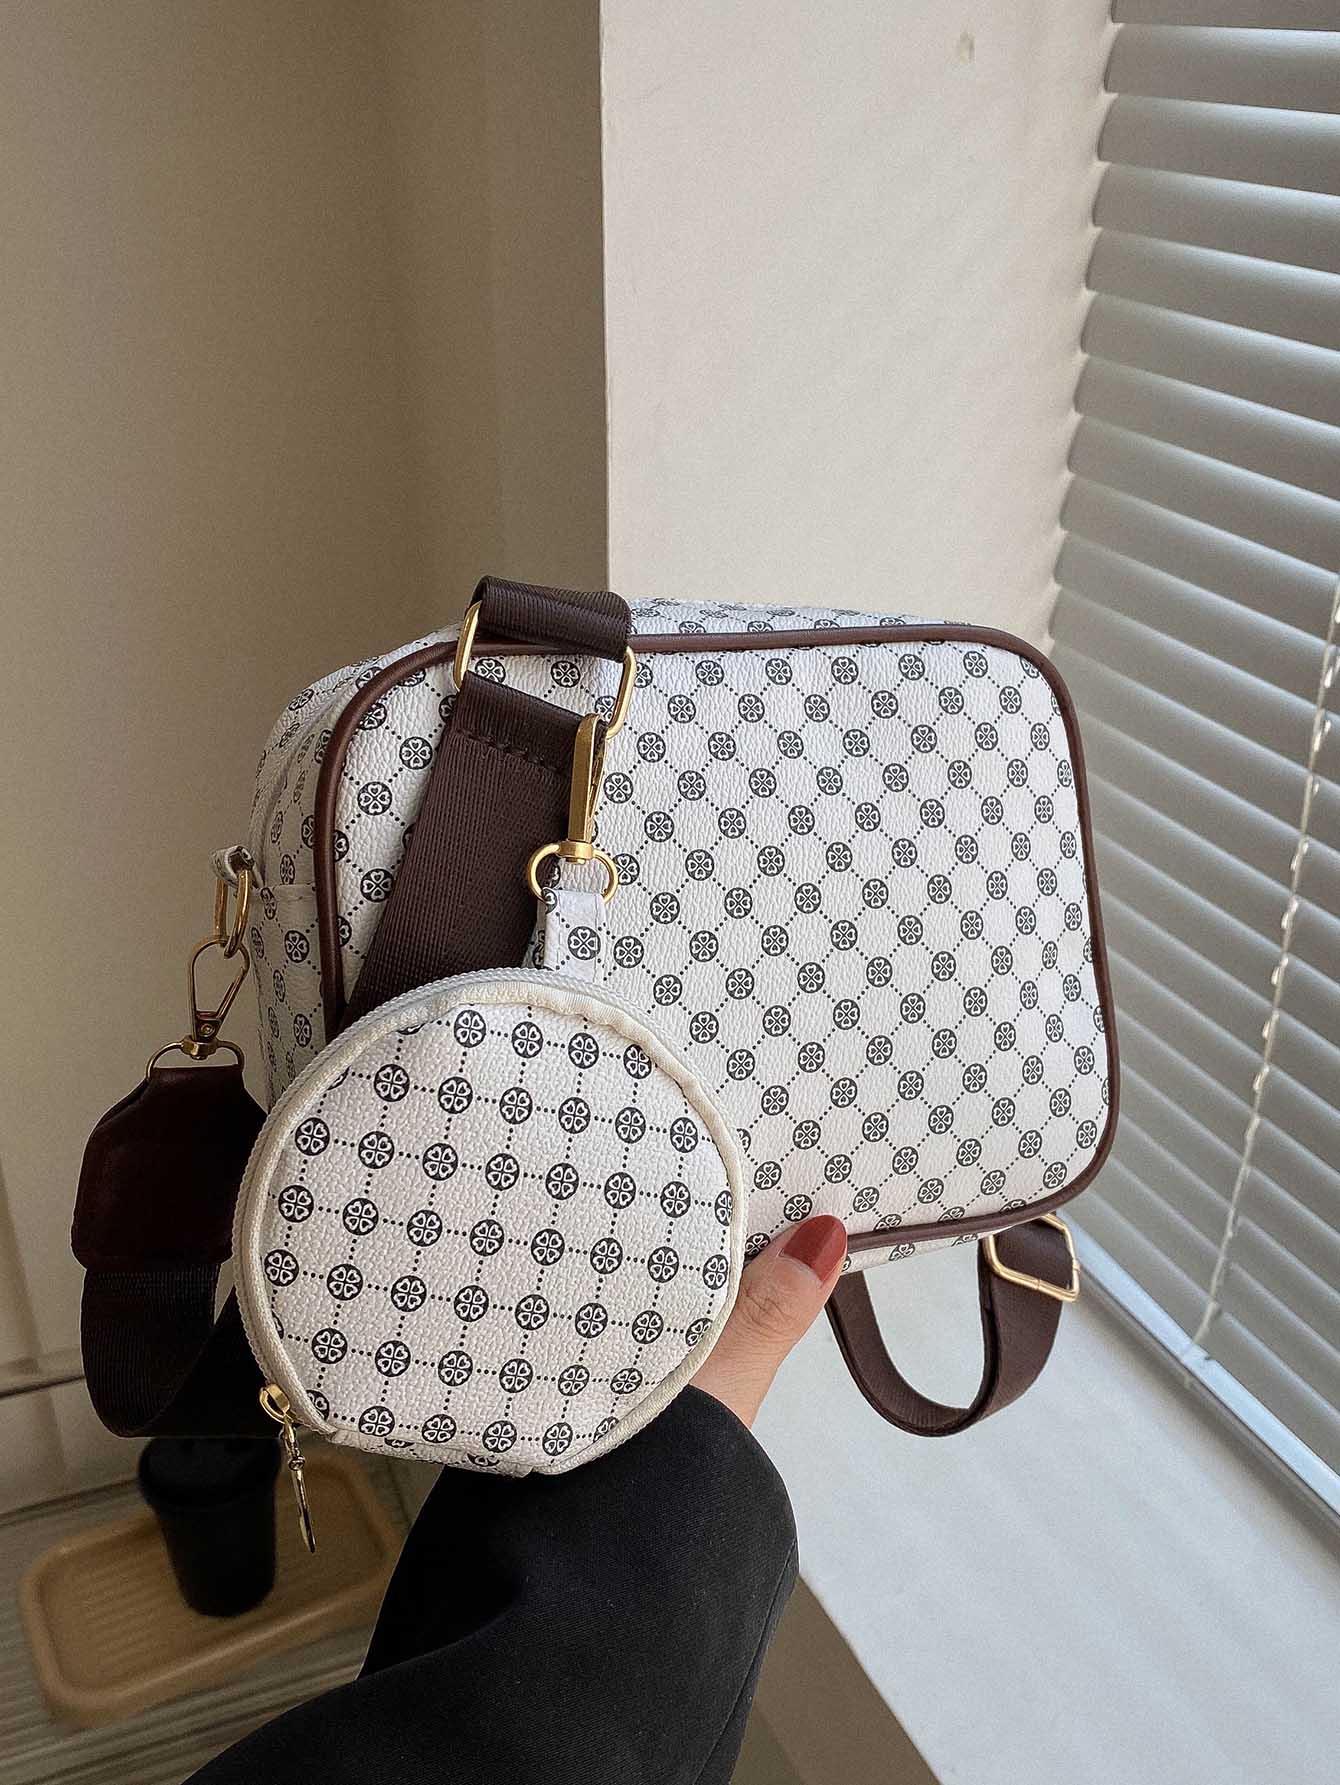 Мини-квадратная сумка с геометрическим узором и портмоне для монет Квадратная сумка в стиле ретро, белый